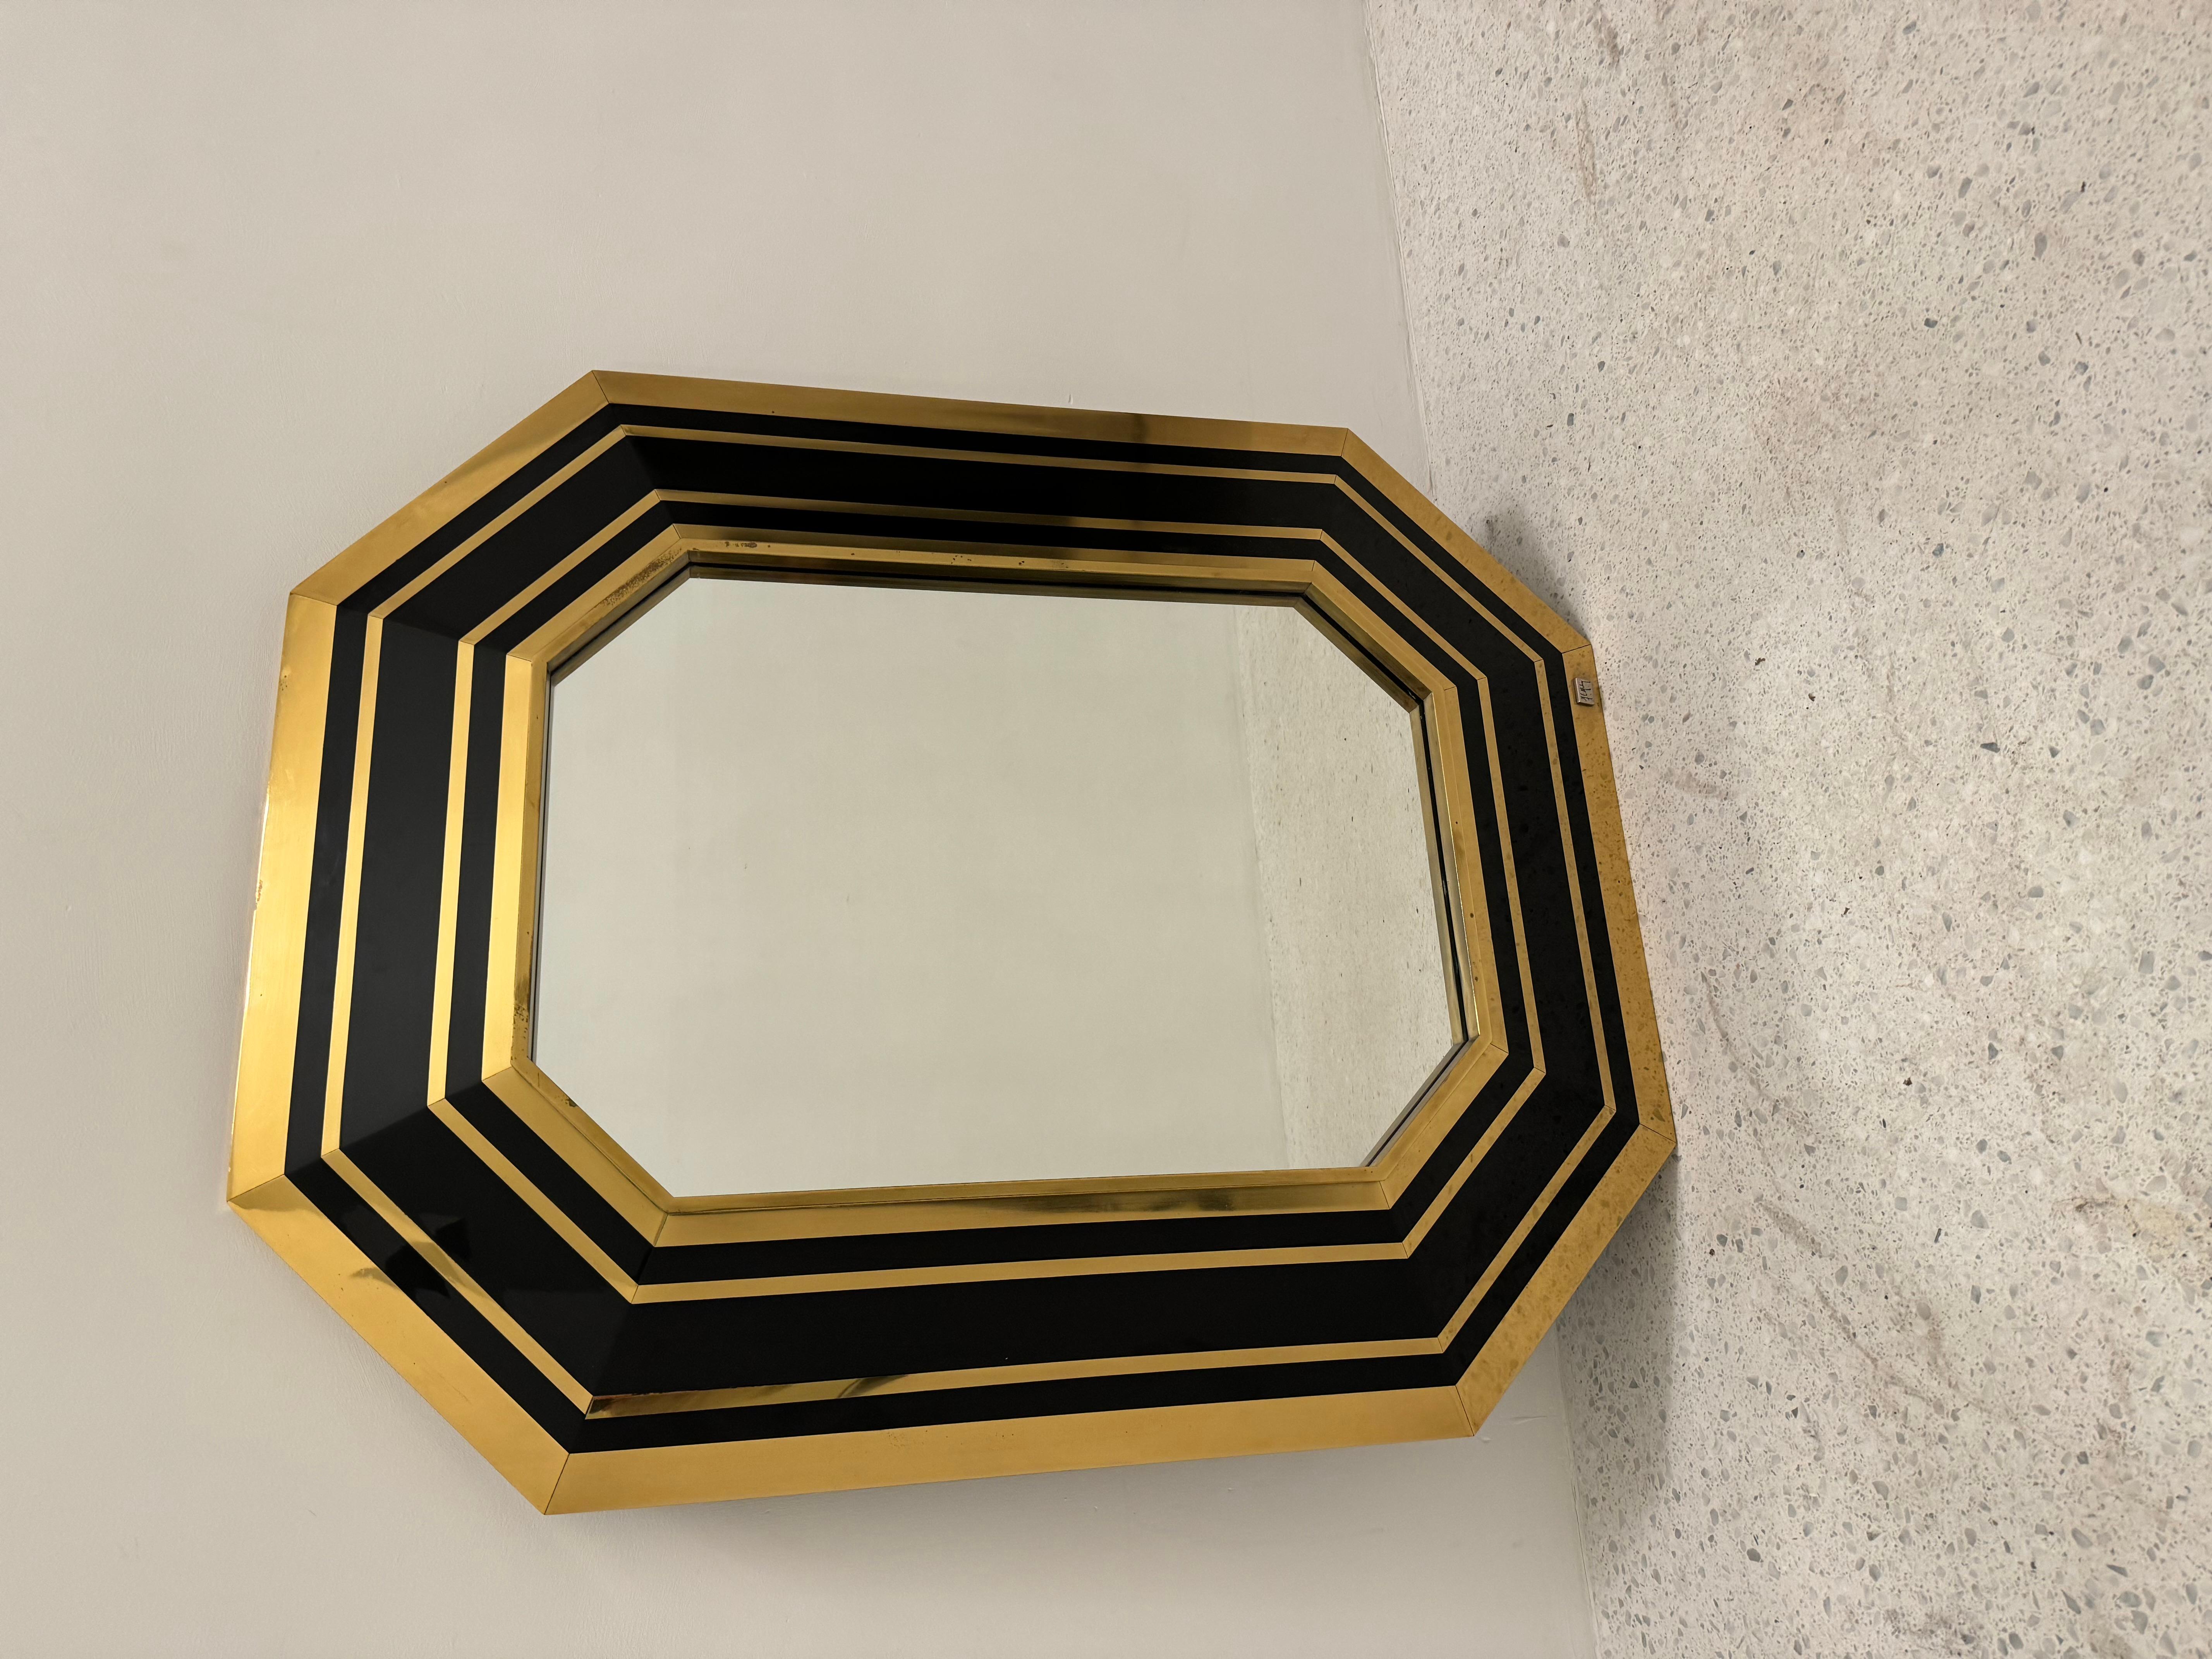 Miroir octogonal conçu et signé par le designer français Jean Claude Mahey. Le cadre du miroir alterne des bandes noires et des bandes dorées pour un aspect majestueux.